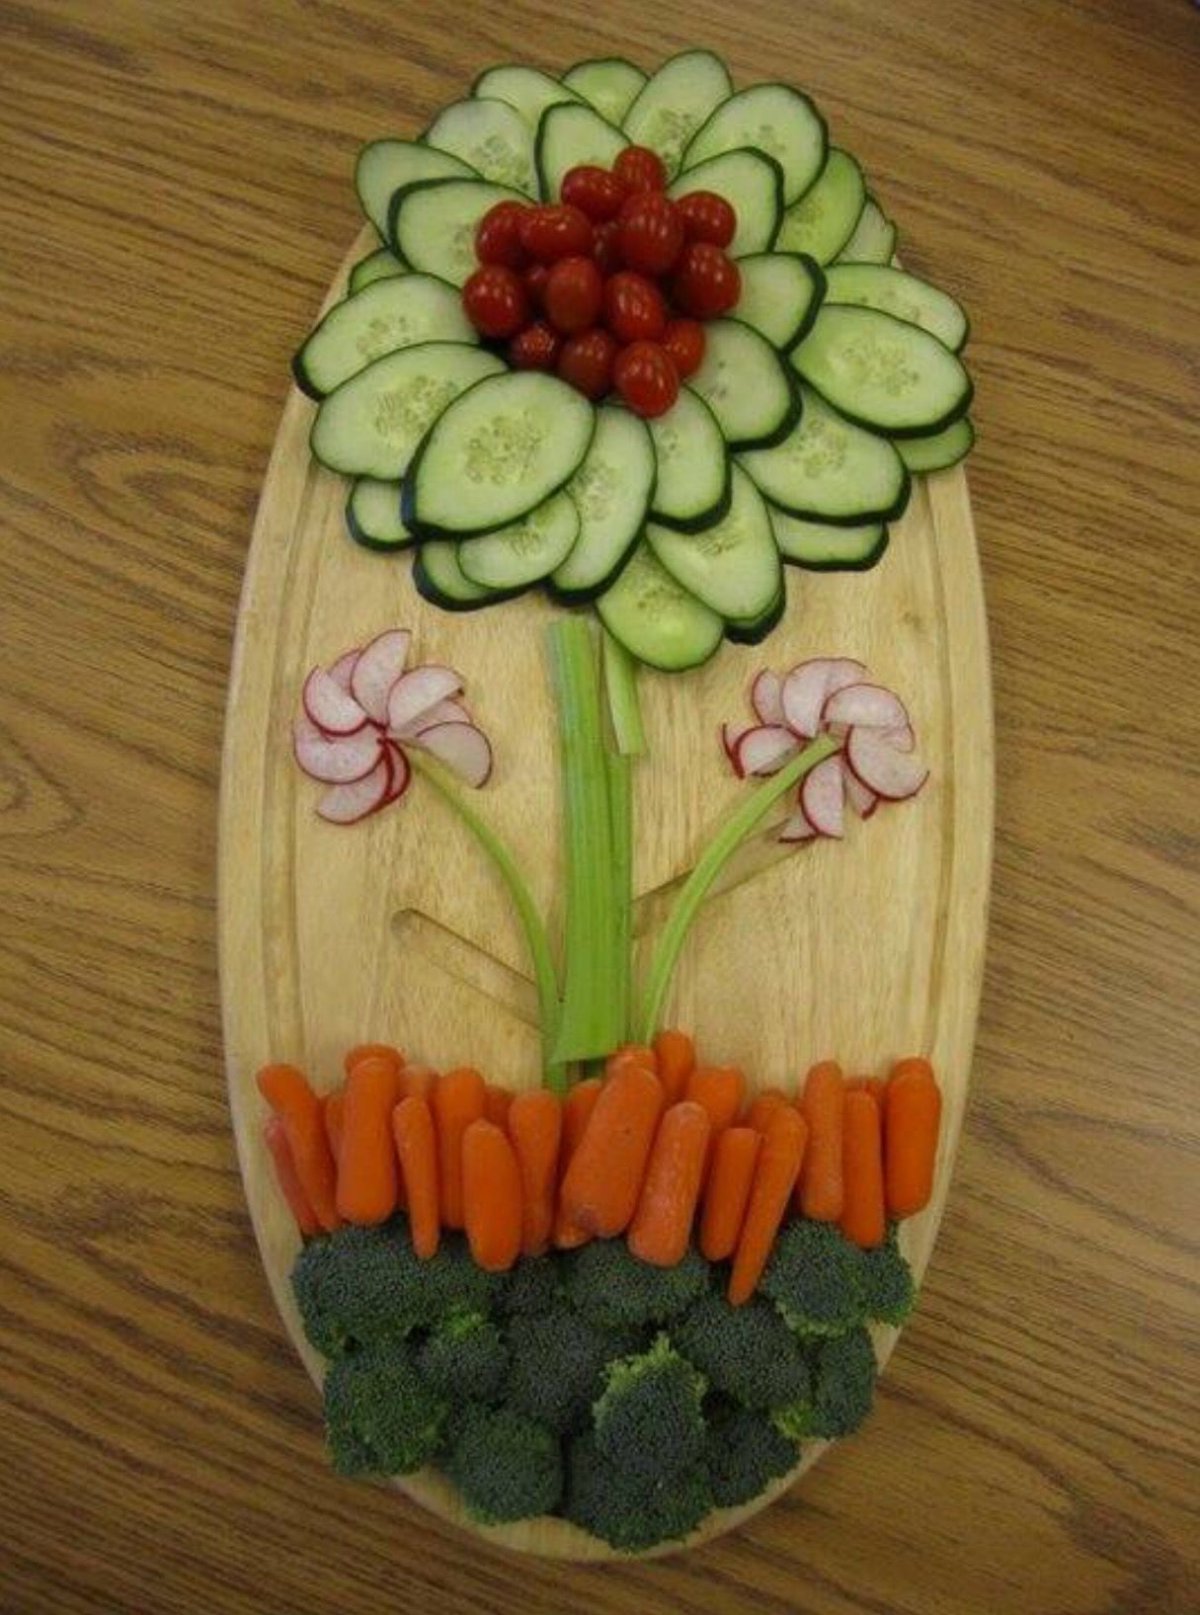 Блюда из овощей